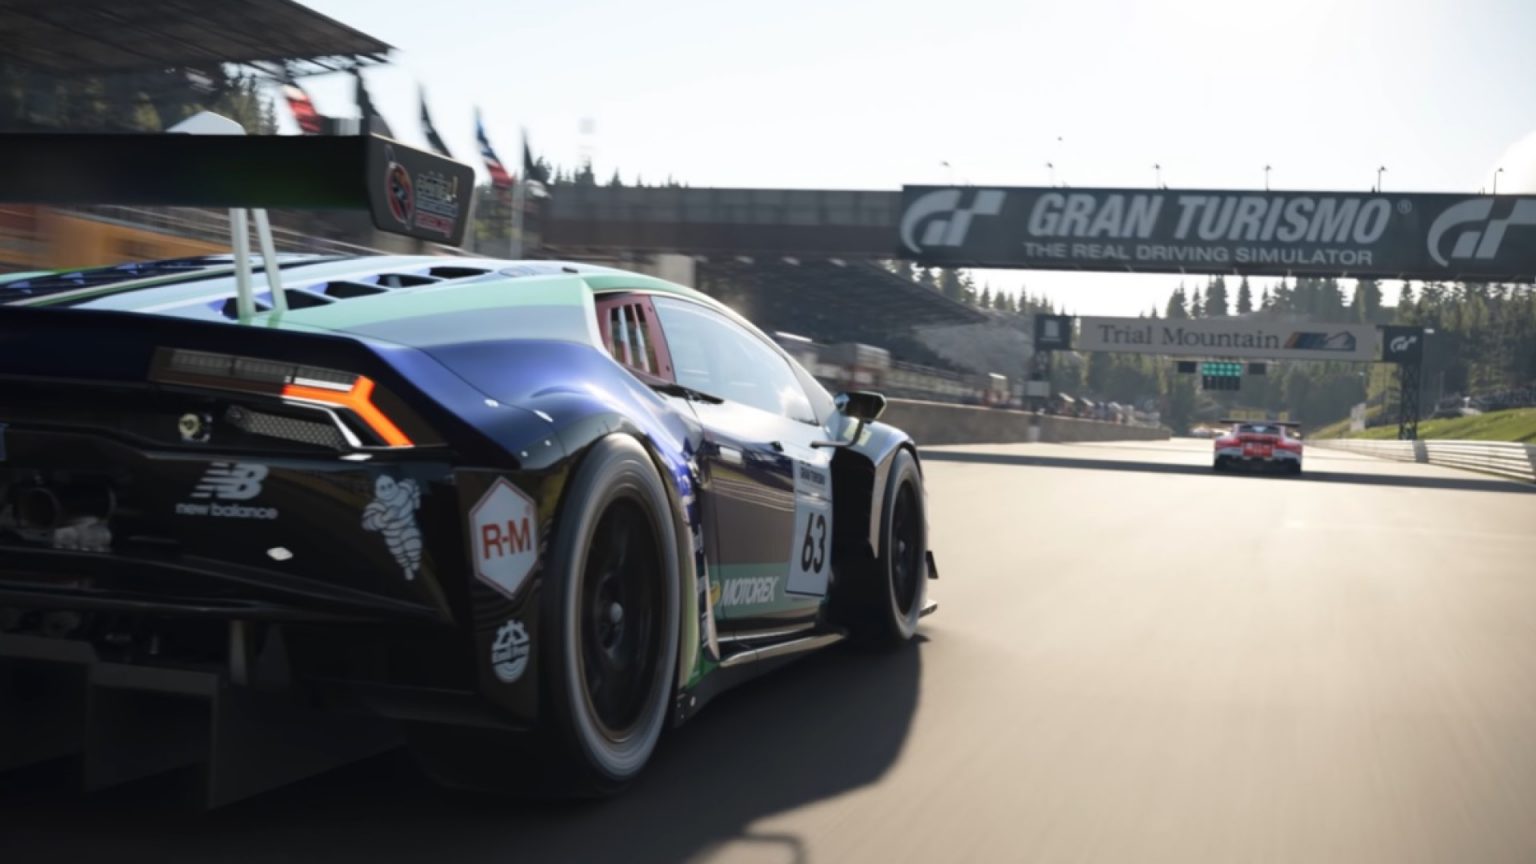 Na początku sierpnia Gran Turismo 7 otrzyma cztery nowe samochody - zapowiada producent serii